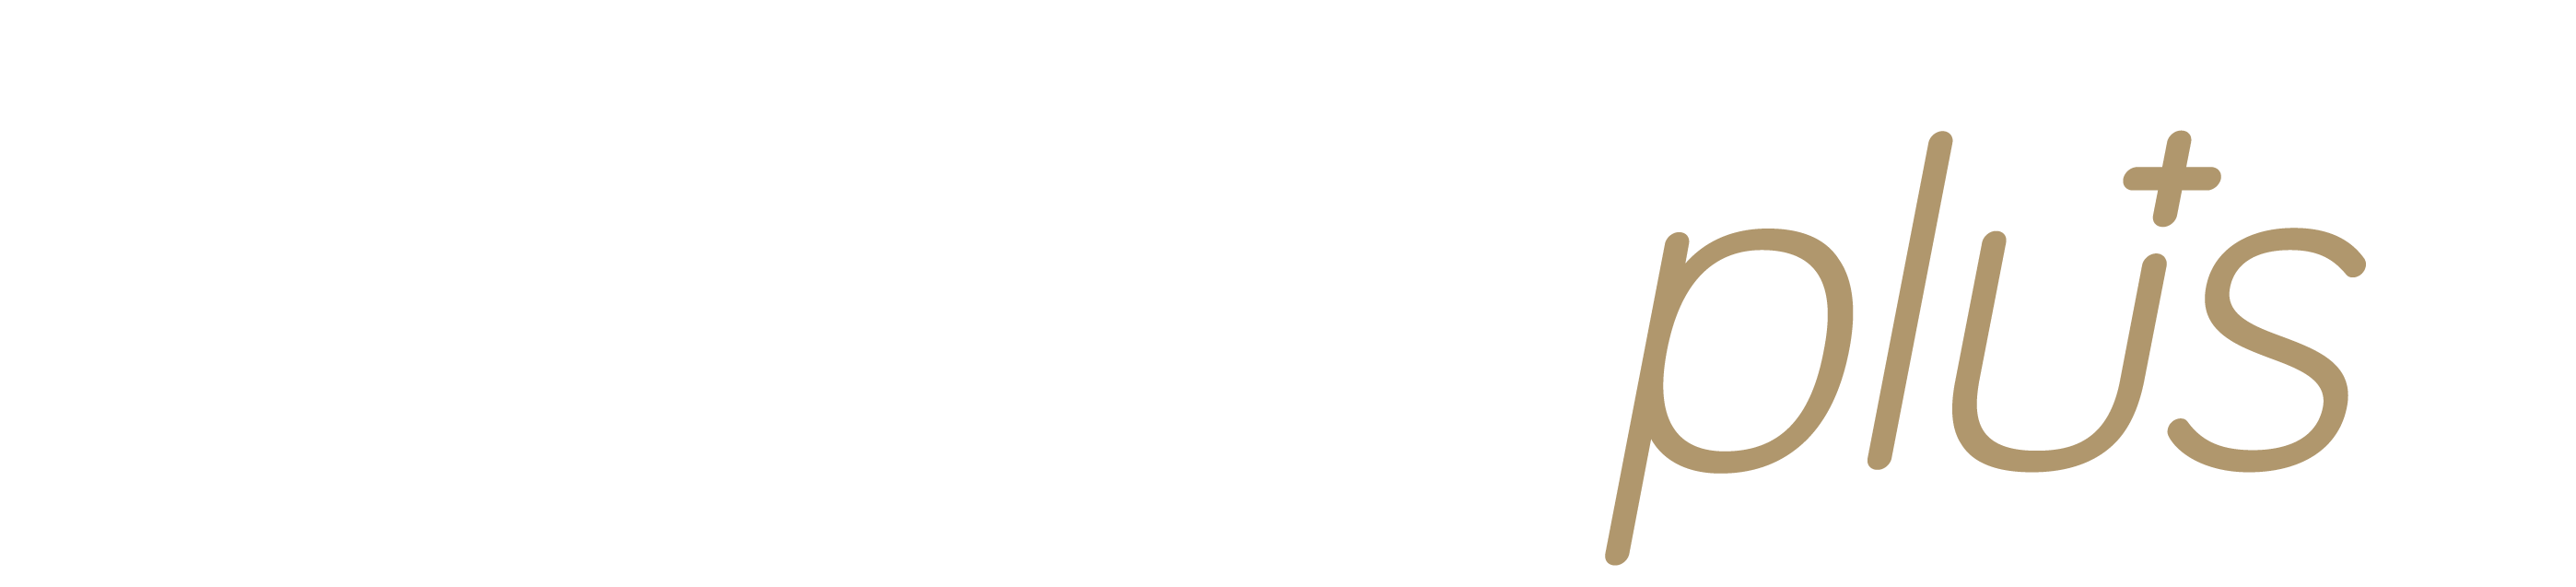 Shopify Plus Logo